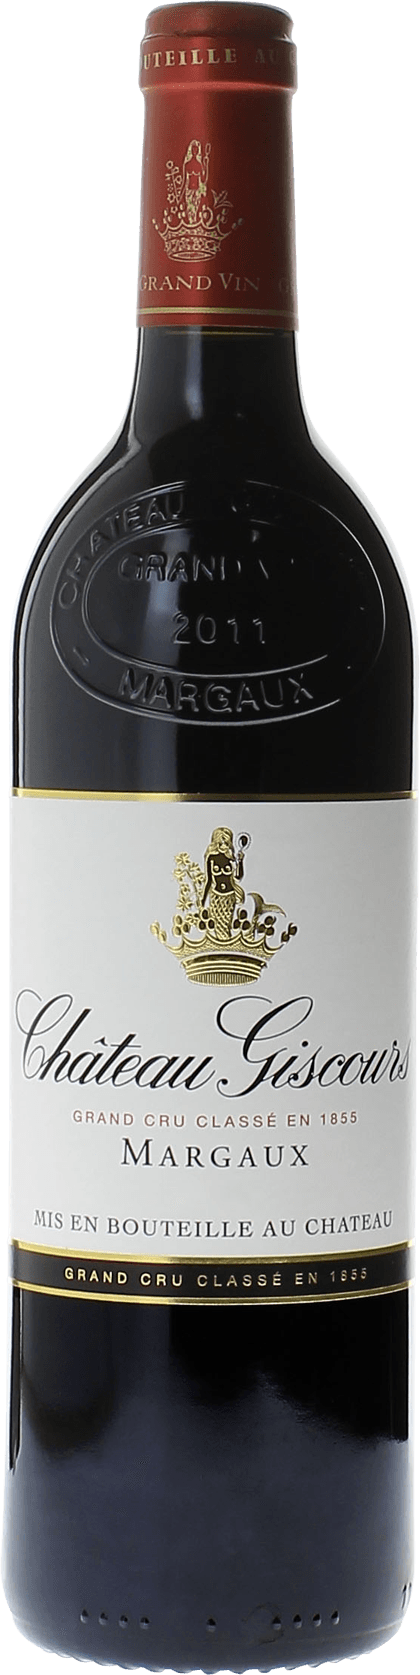 Giscours 1995 3me Grand cru class Margaux, Bordeaux rouge